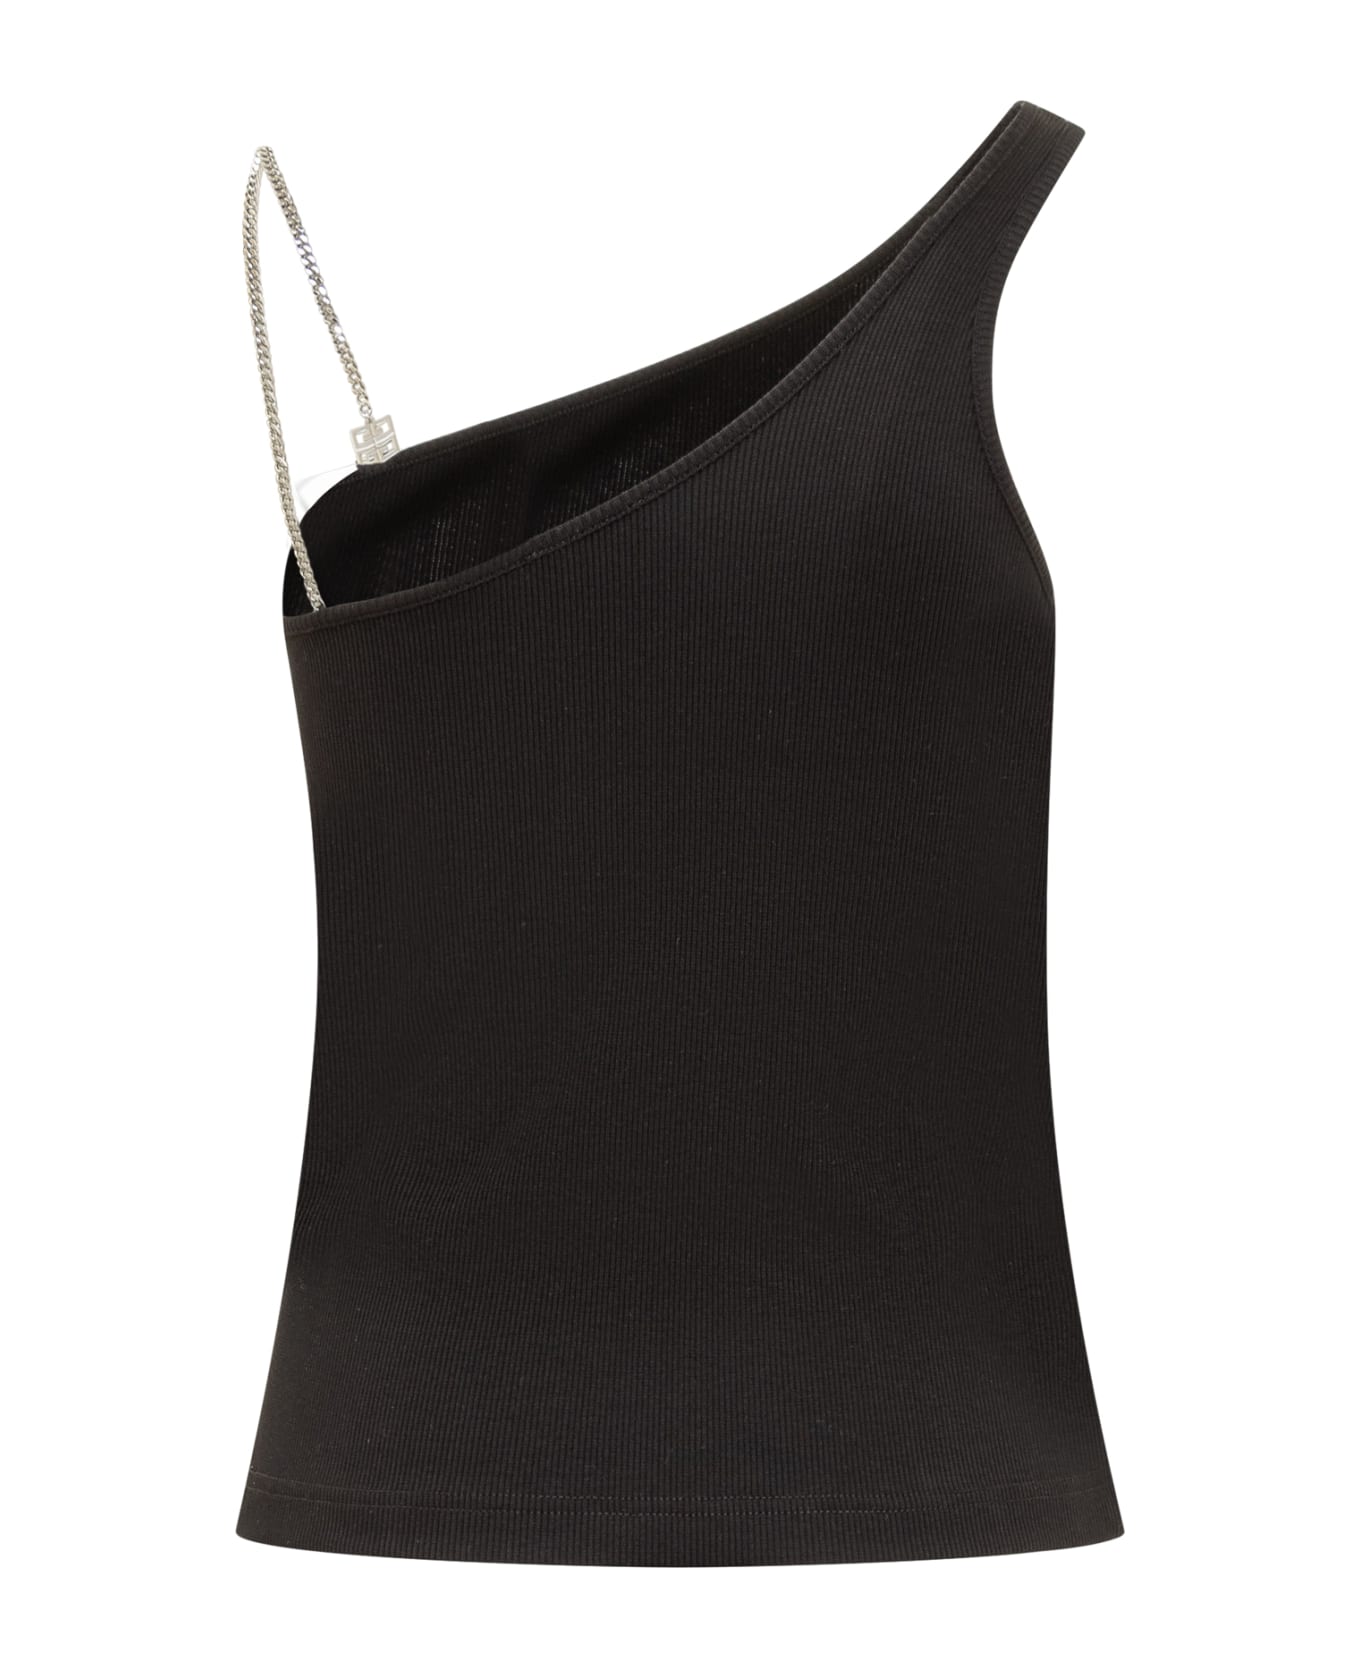 Givenchy One-shoulder Top - Black